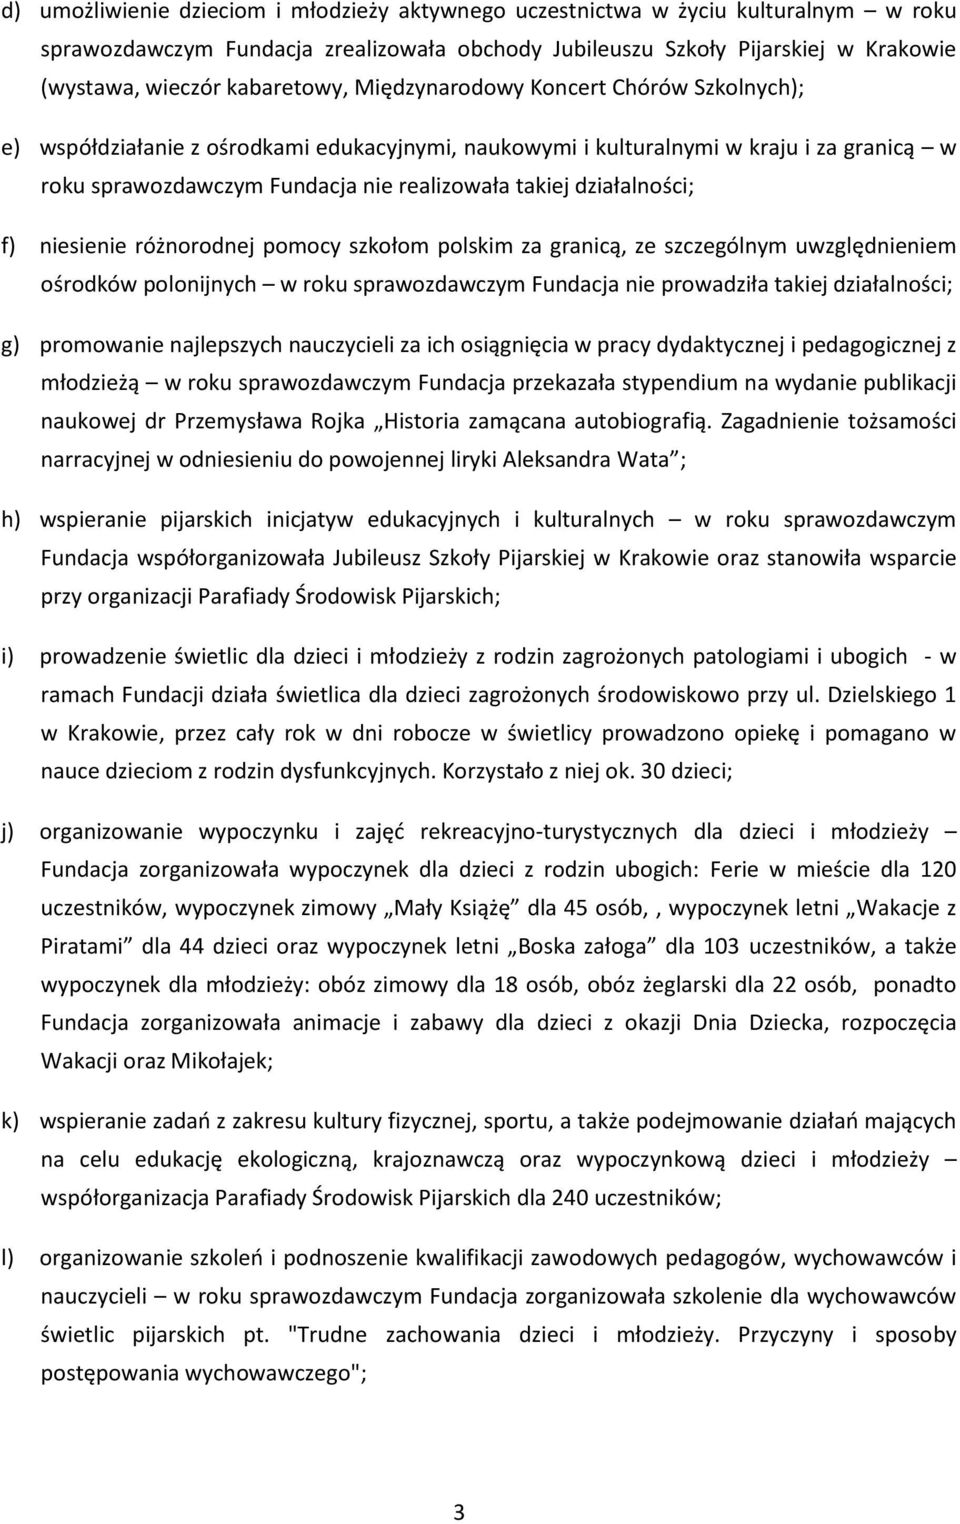 działalności; f) niesienie różnorodnej pomocy szkołom polskim za granicą, ze szczególnym uwzględnieniem ośrodków polonijnych w roku sprawozdawczym Fundacja nie prowadziła takiej działalności; g)